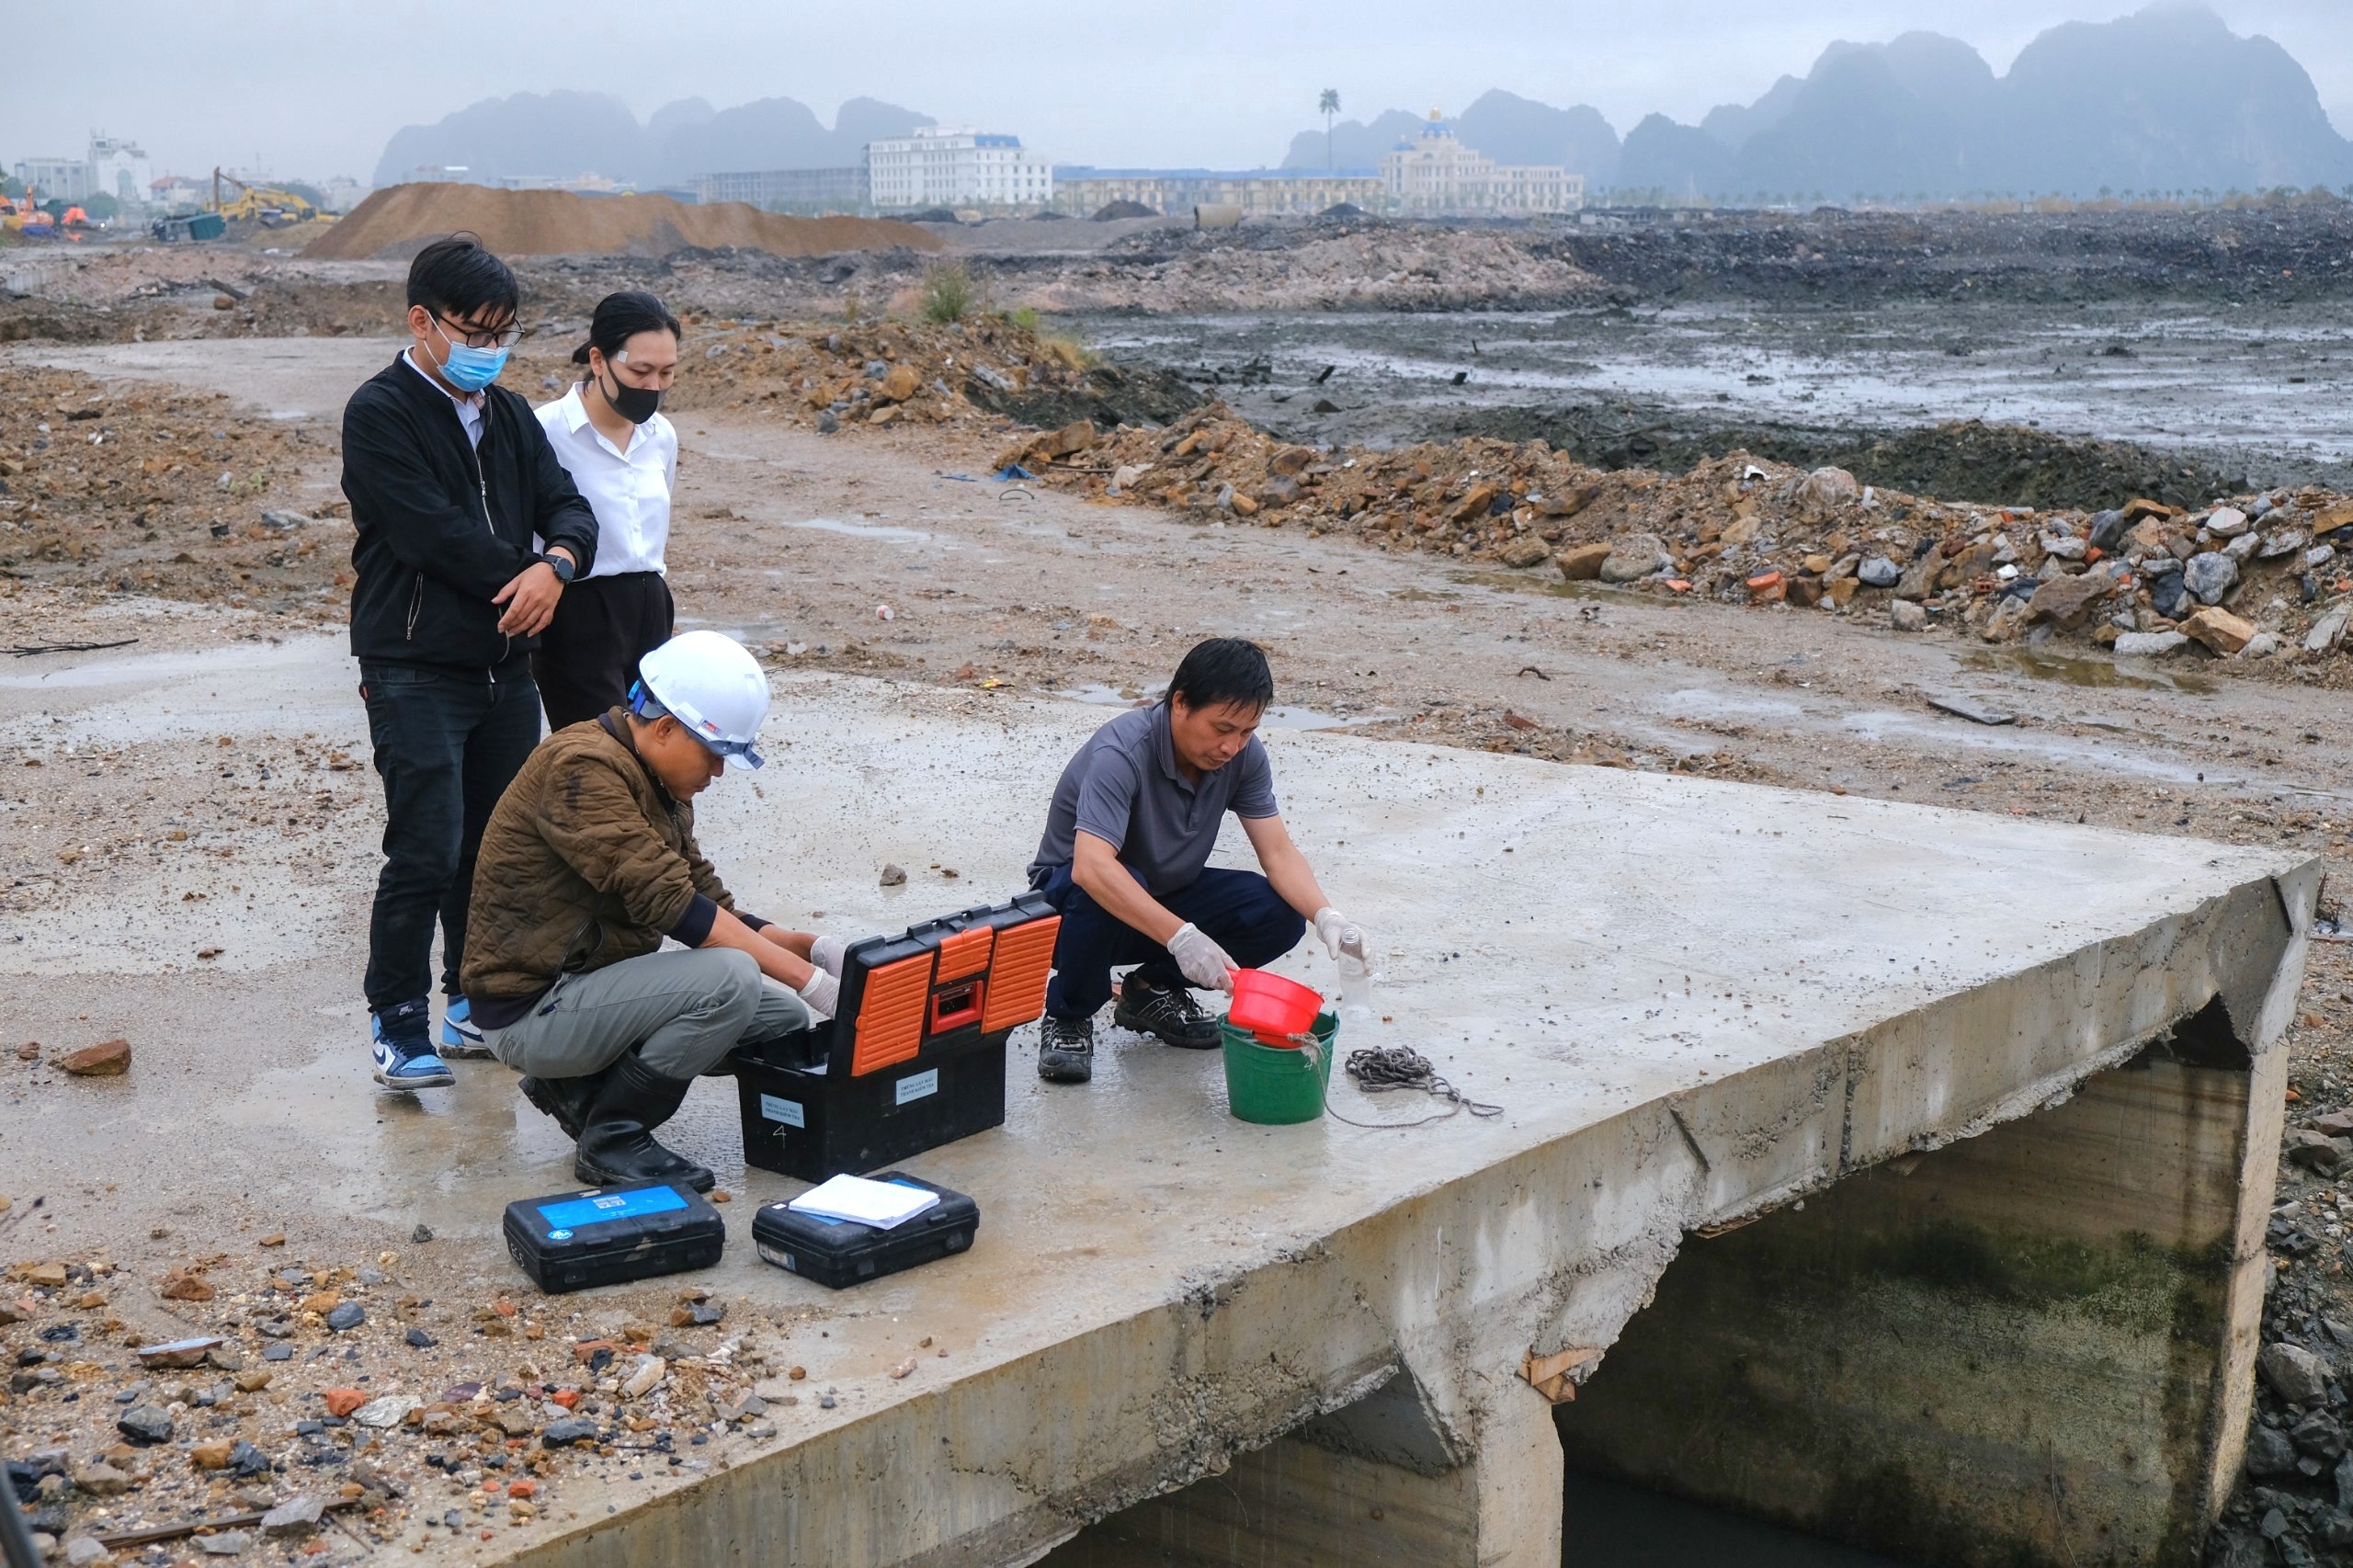 Trung tâm Quan trắc Tài nguyên môi trường Quảng Ninh lấy mẫu nước để phân tích.